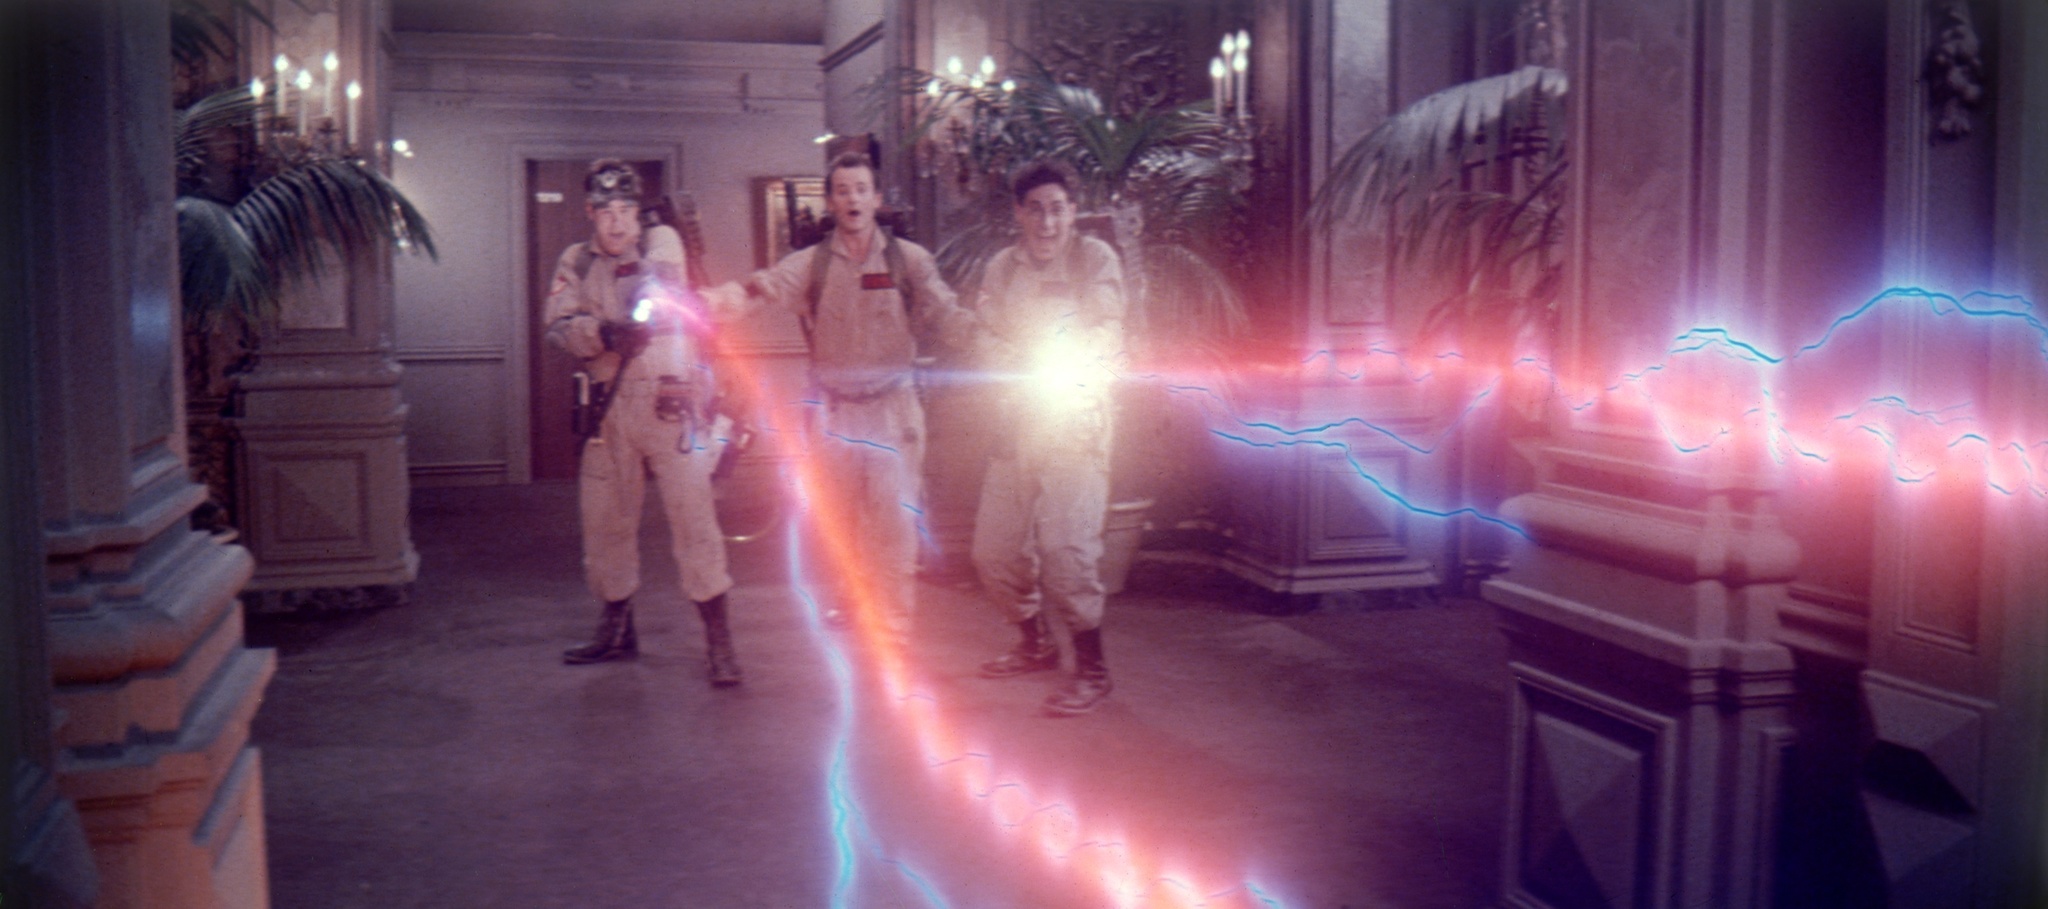 Still of Dan Aykroyd, Bill Murray and Harold Ramis in Ghost Busters (1984)